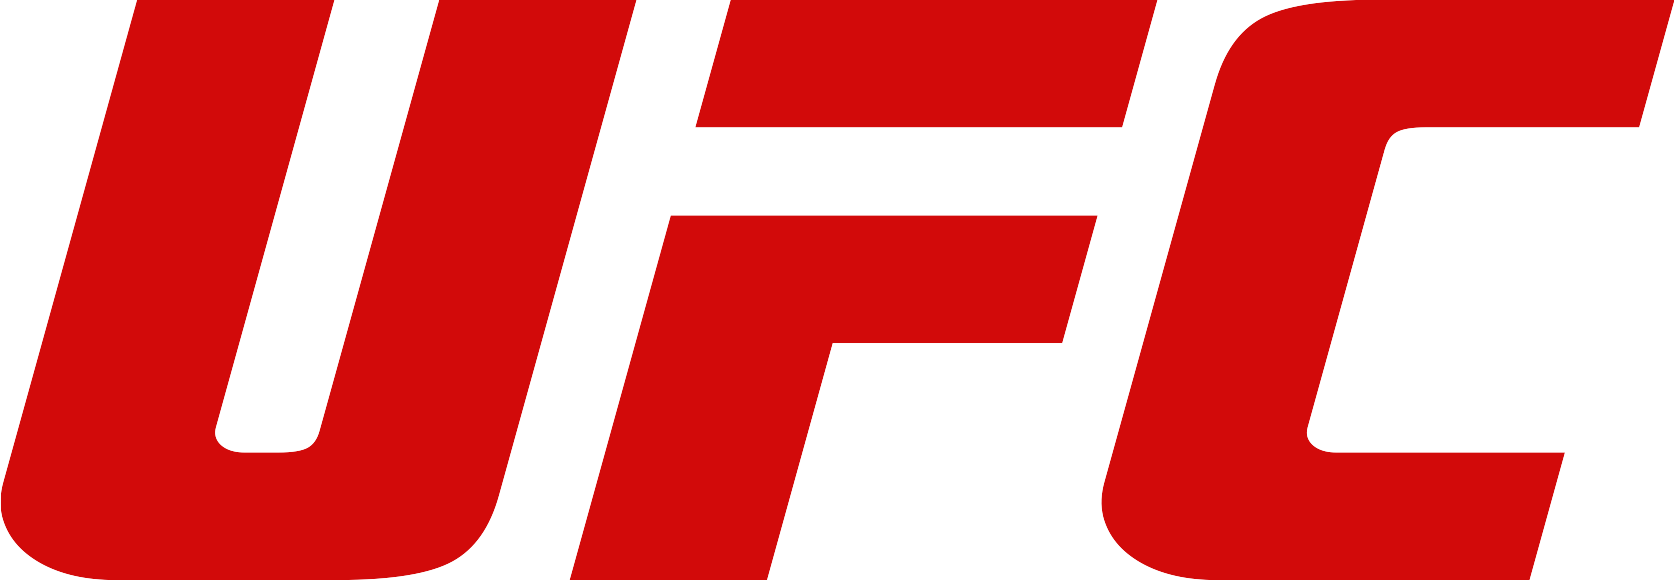 UFC_Logo.png